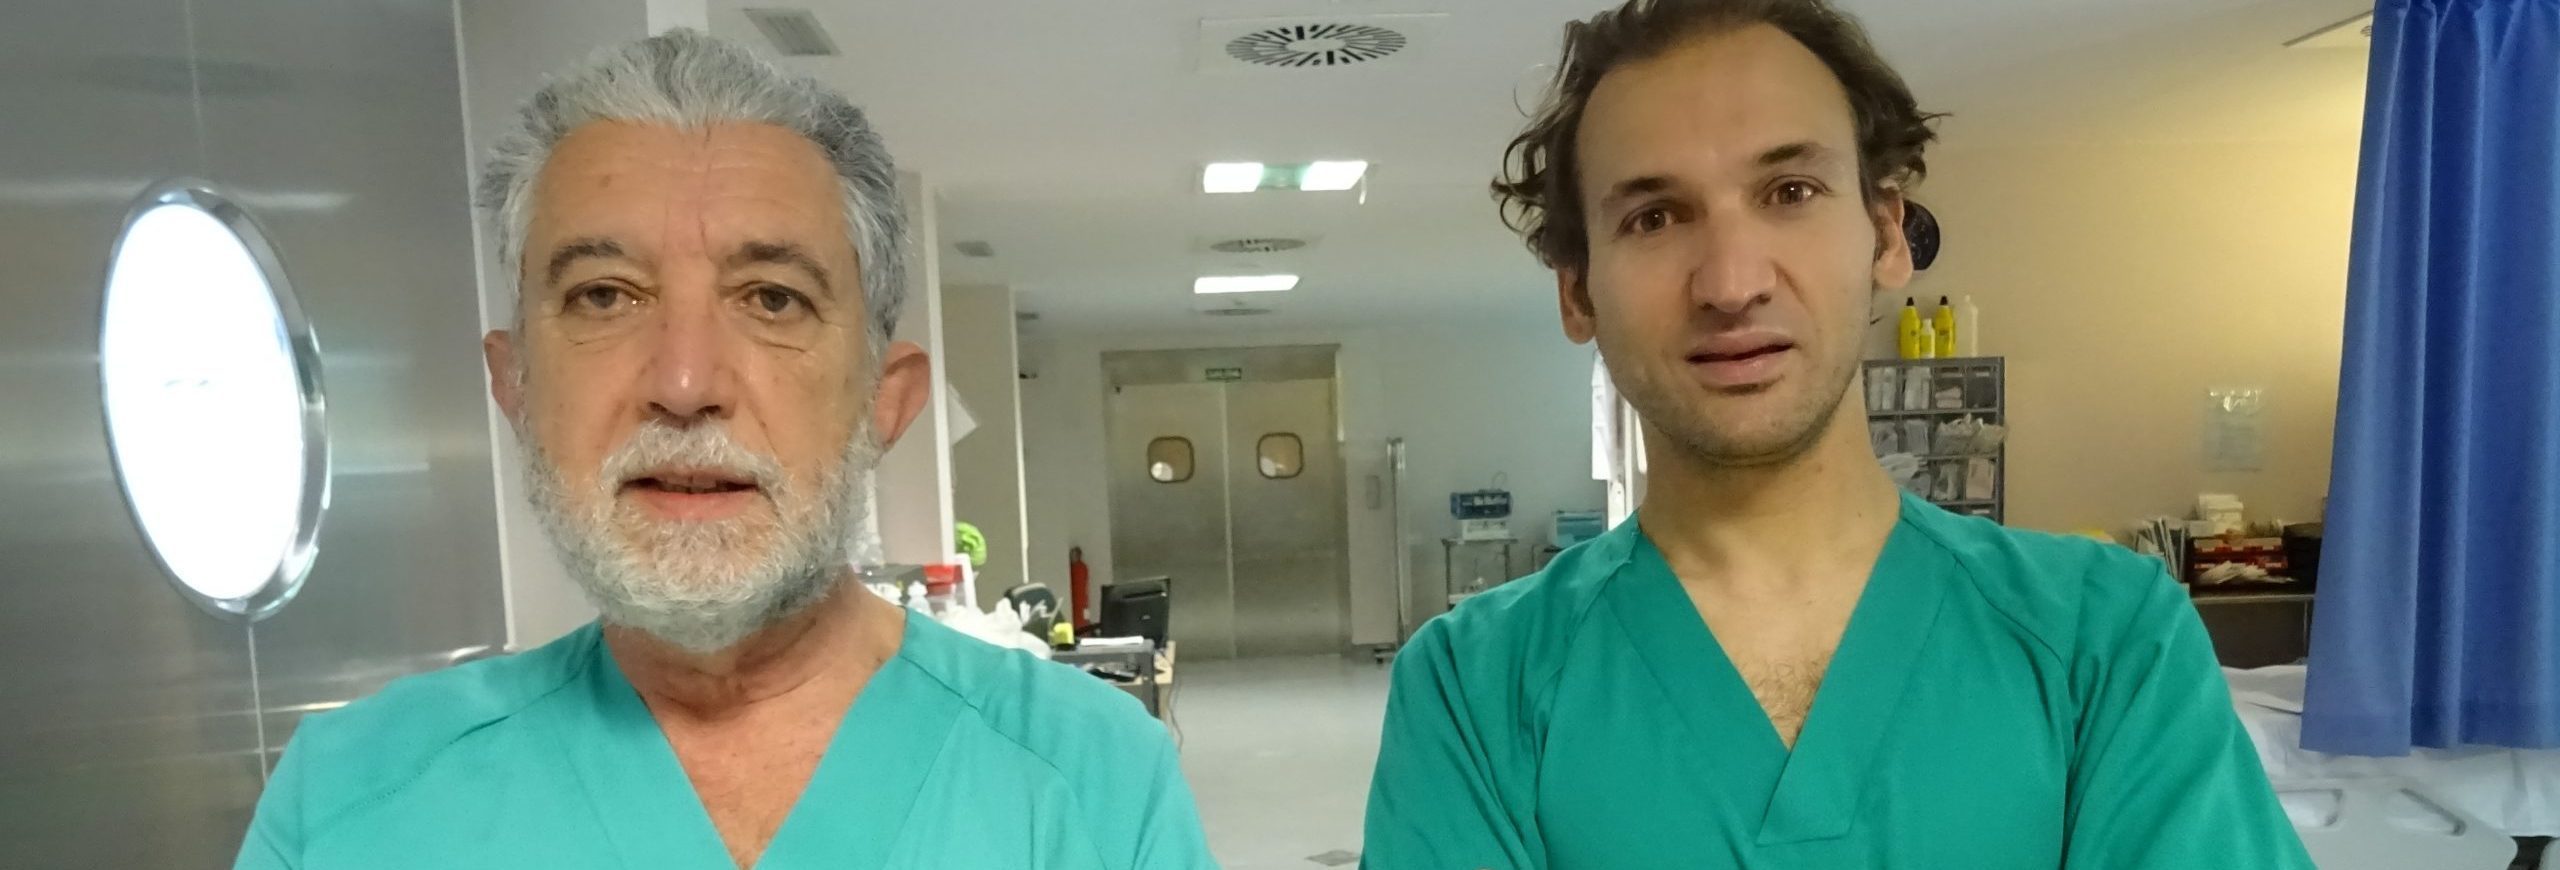 Los cirujanos expertos en cirugía laparoscópica de Viamed Los Manzanos, Herrero Fabregat y Gil Albarellos colaboran en un Master sobre cirugía esofagástrica promovido por la Asociación Española de Cirujanos